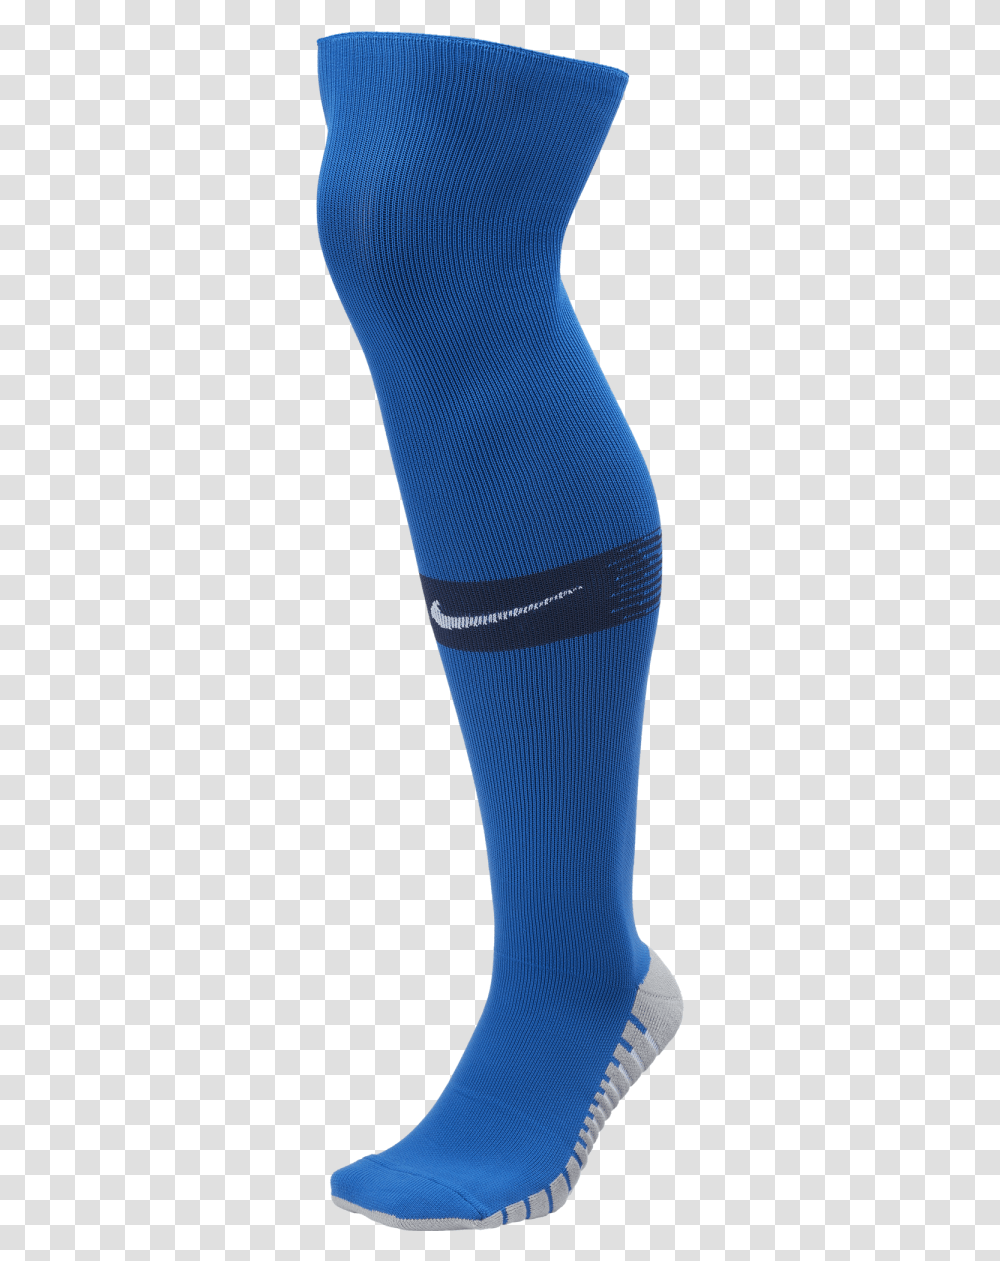 Matchfit Socks Nike Soccer Socks, Apparel, Shoe, Footwear Transparent Png